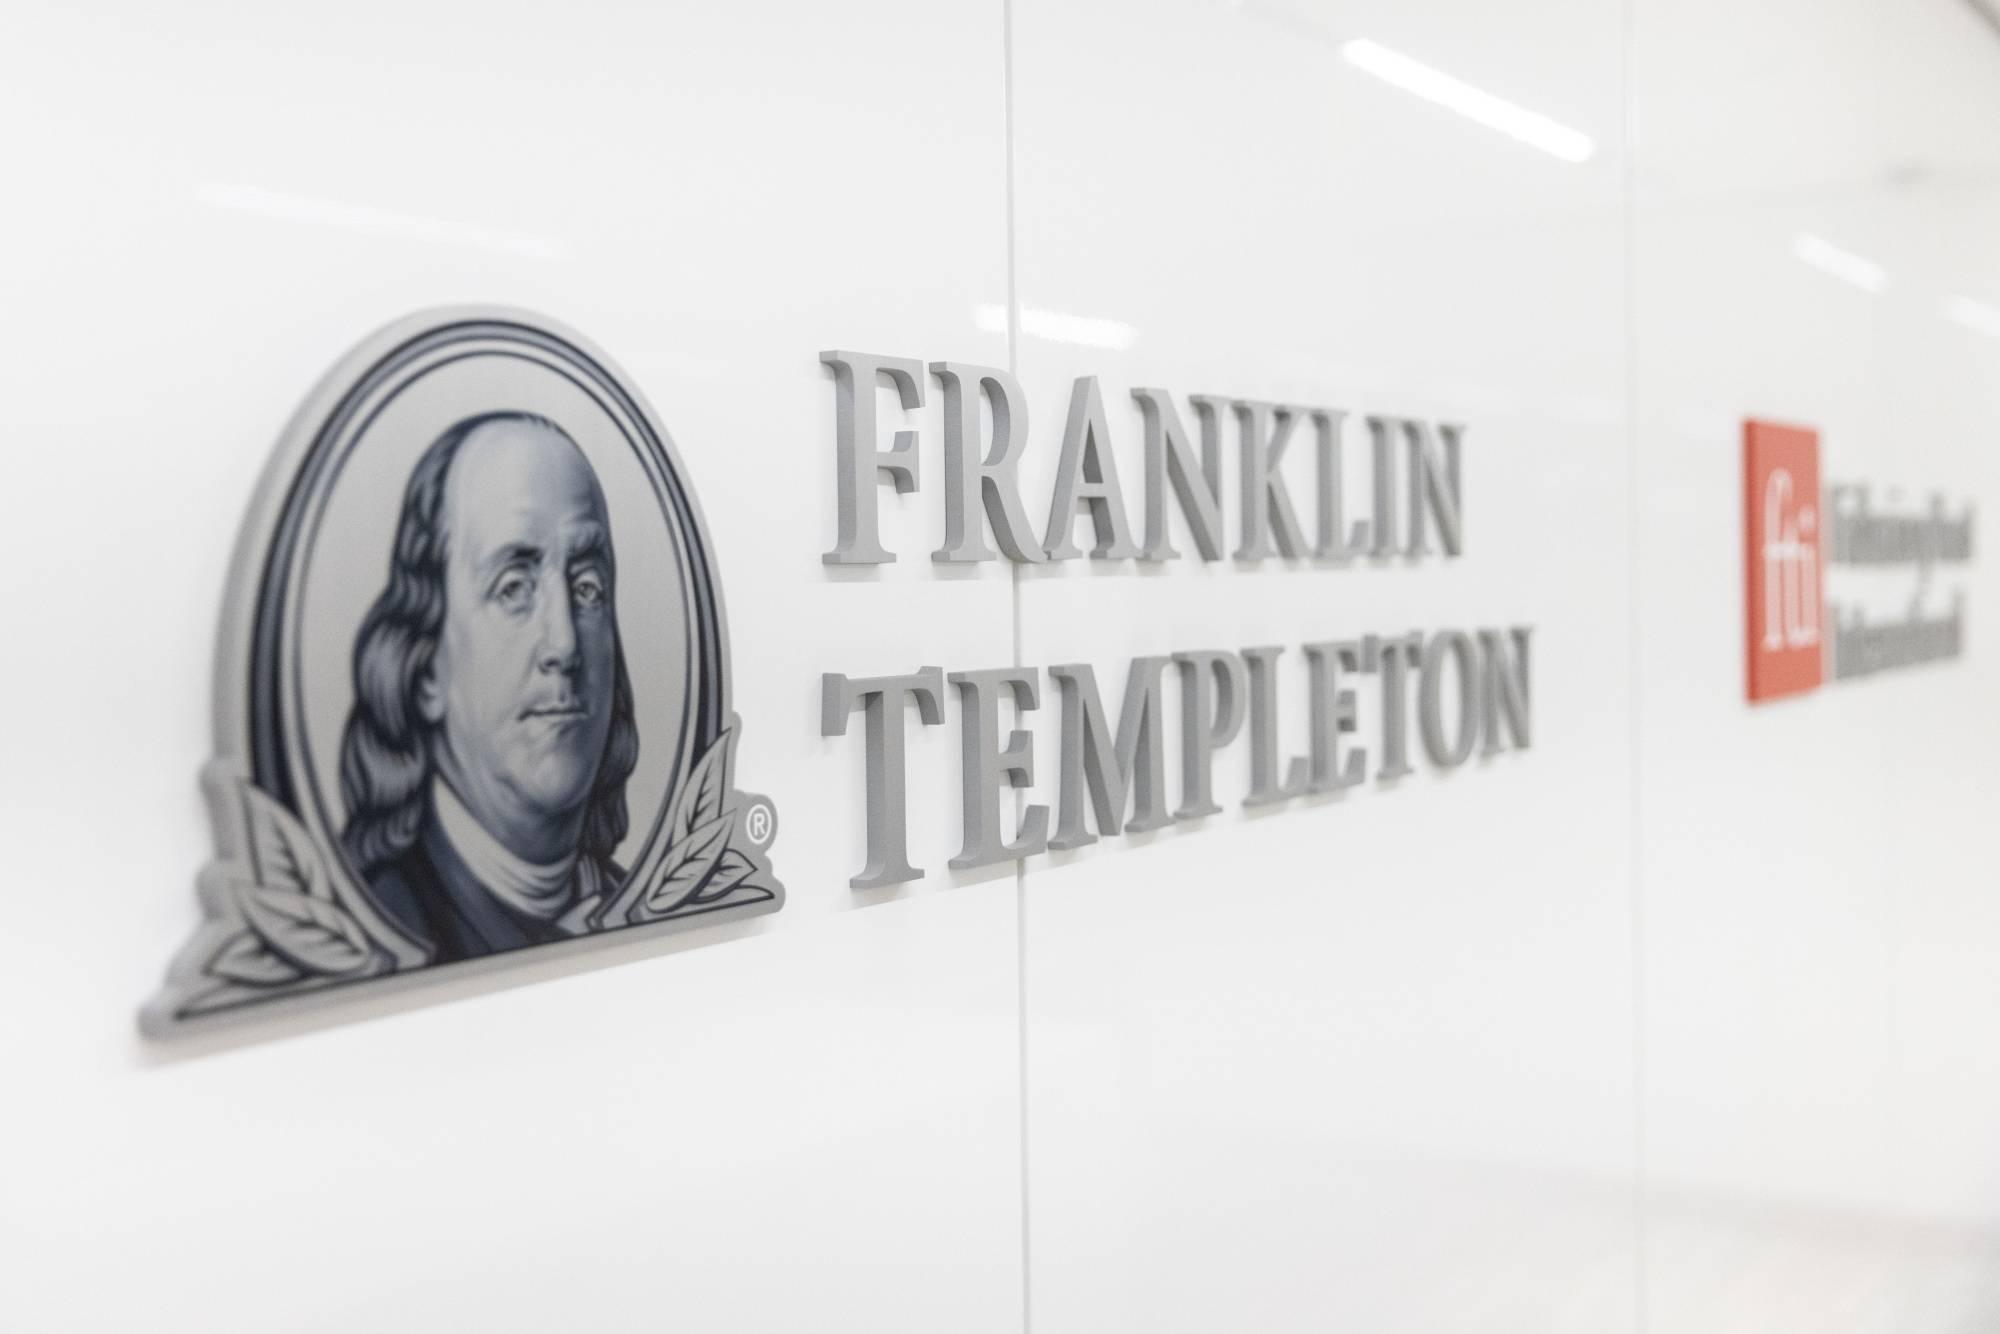 franklin-templeton-nop-don-dang-ky-etf-ethereum-spot